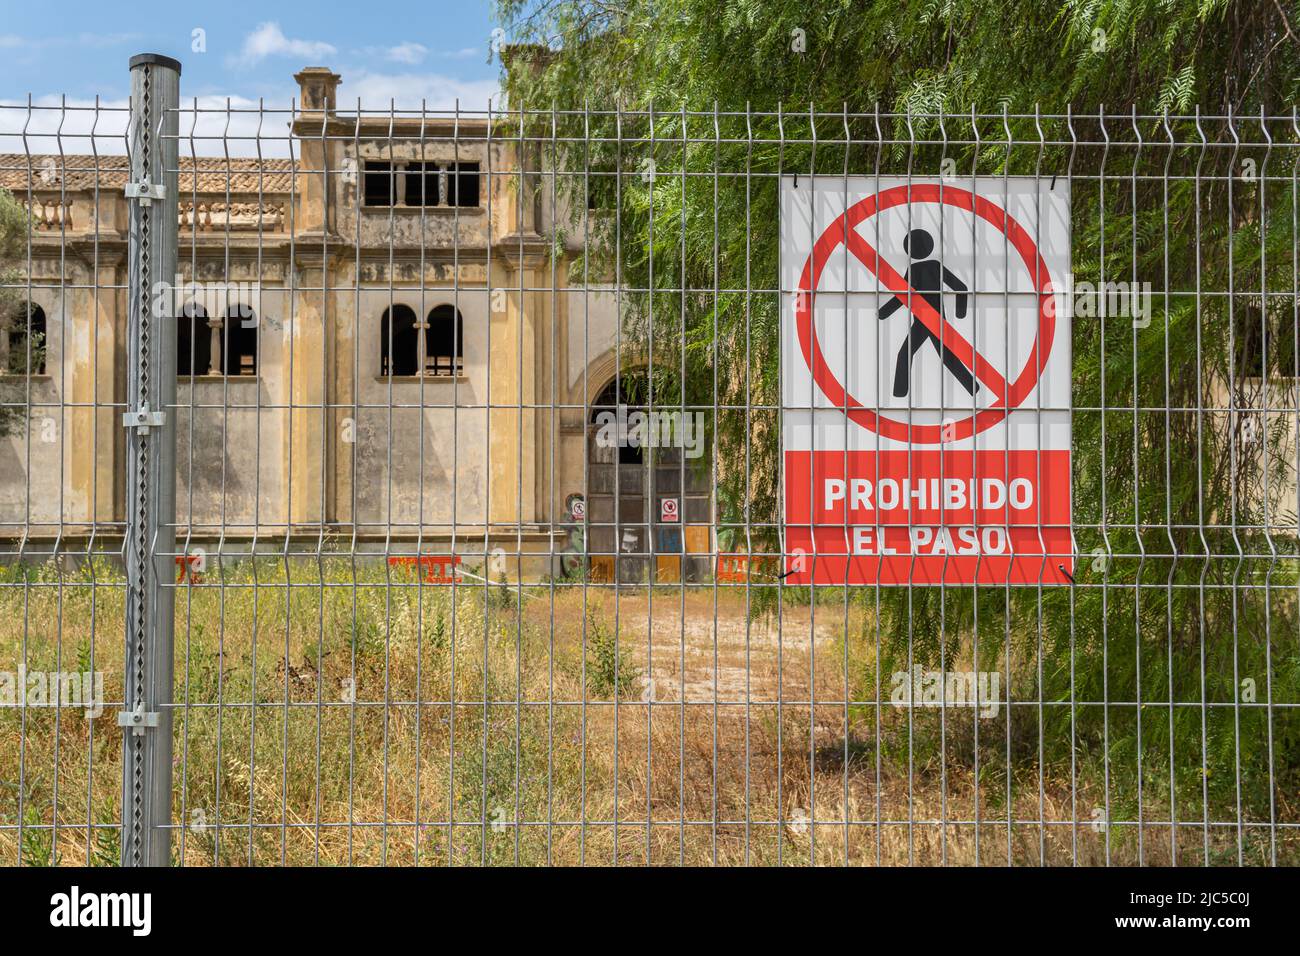 Primo piano di un segno di non trasgressione con testo spagnolo. Sullo sfondo, una vecchia fabbrica in stato di abbandono. Isola di Maiorca, Spagna Foto Stock